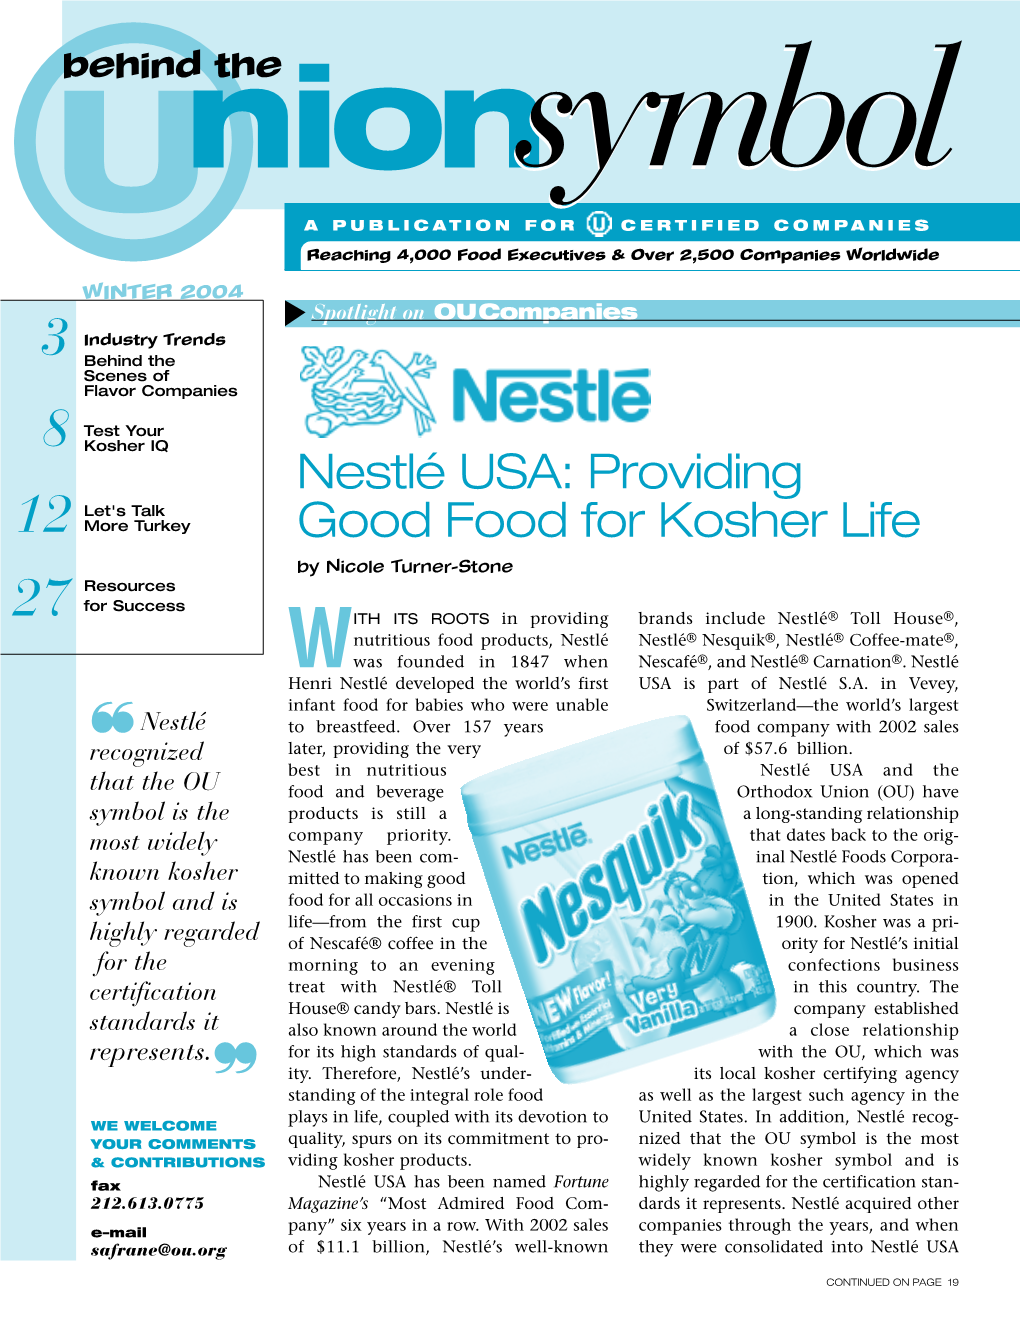 Nestlé USA: Providing Good Food for Kosher Life